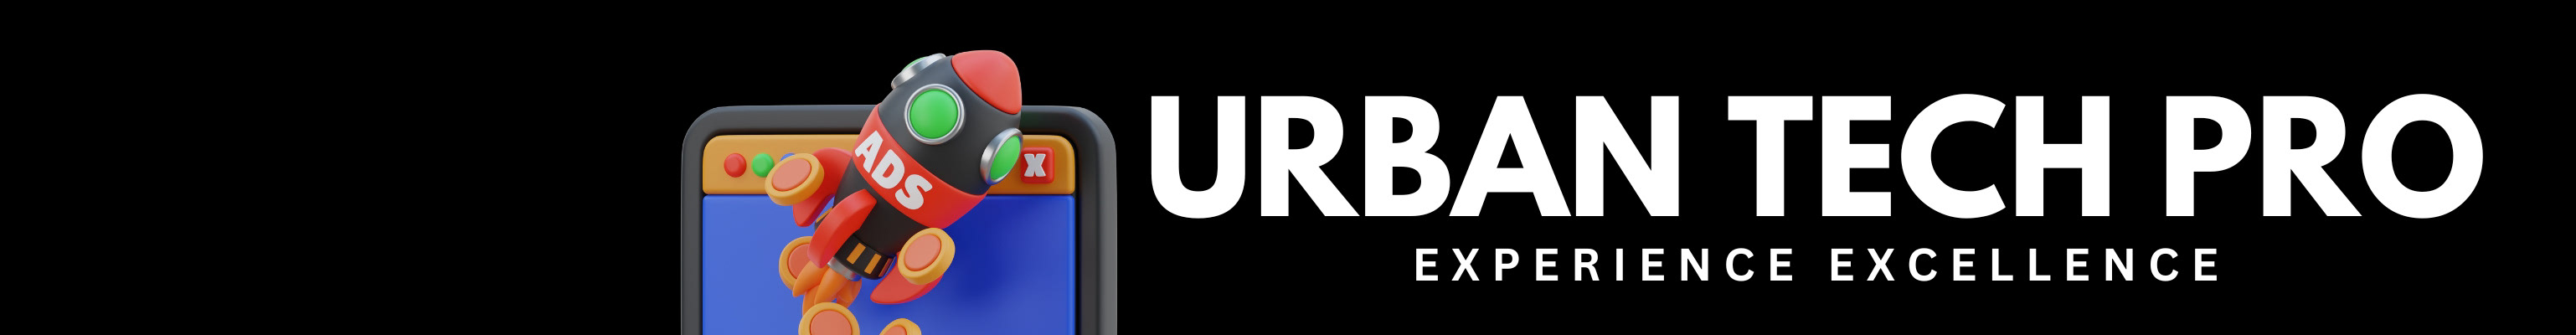 Urban Tech Pro 的個人檔案橫幅